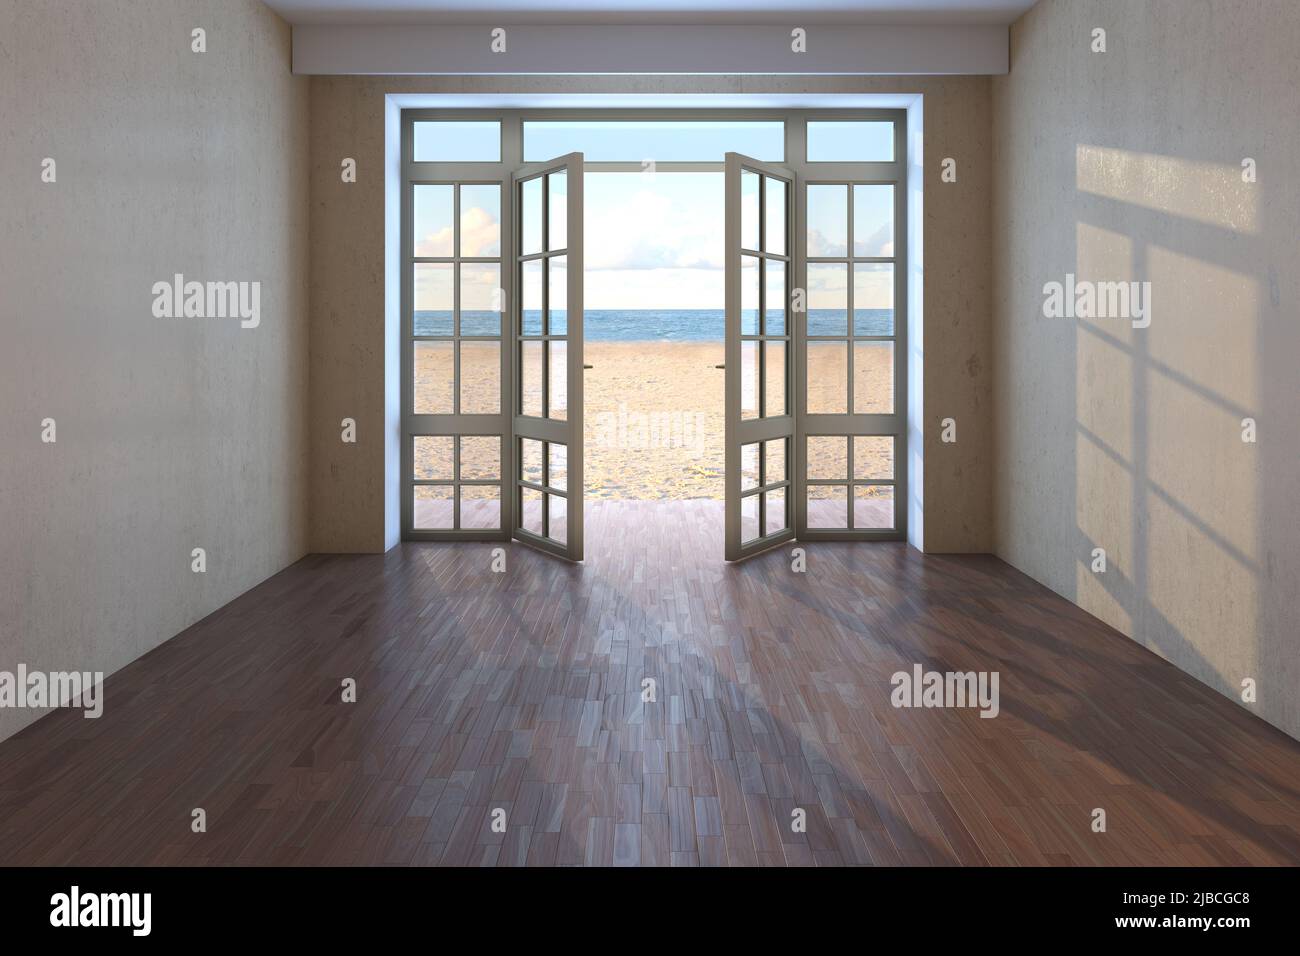 Chambre d'hôtel vide avec vue sur la mer près de la plage. Chambre non meublée avec portes ouvertes donnant sur l'océan, le sable jaune et les nuages. Parquet sombre et murs en stuc beige. 3d rendu. 8K Ultra HD Banque D'Images